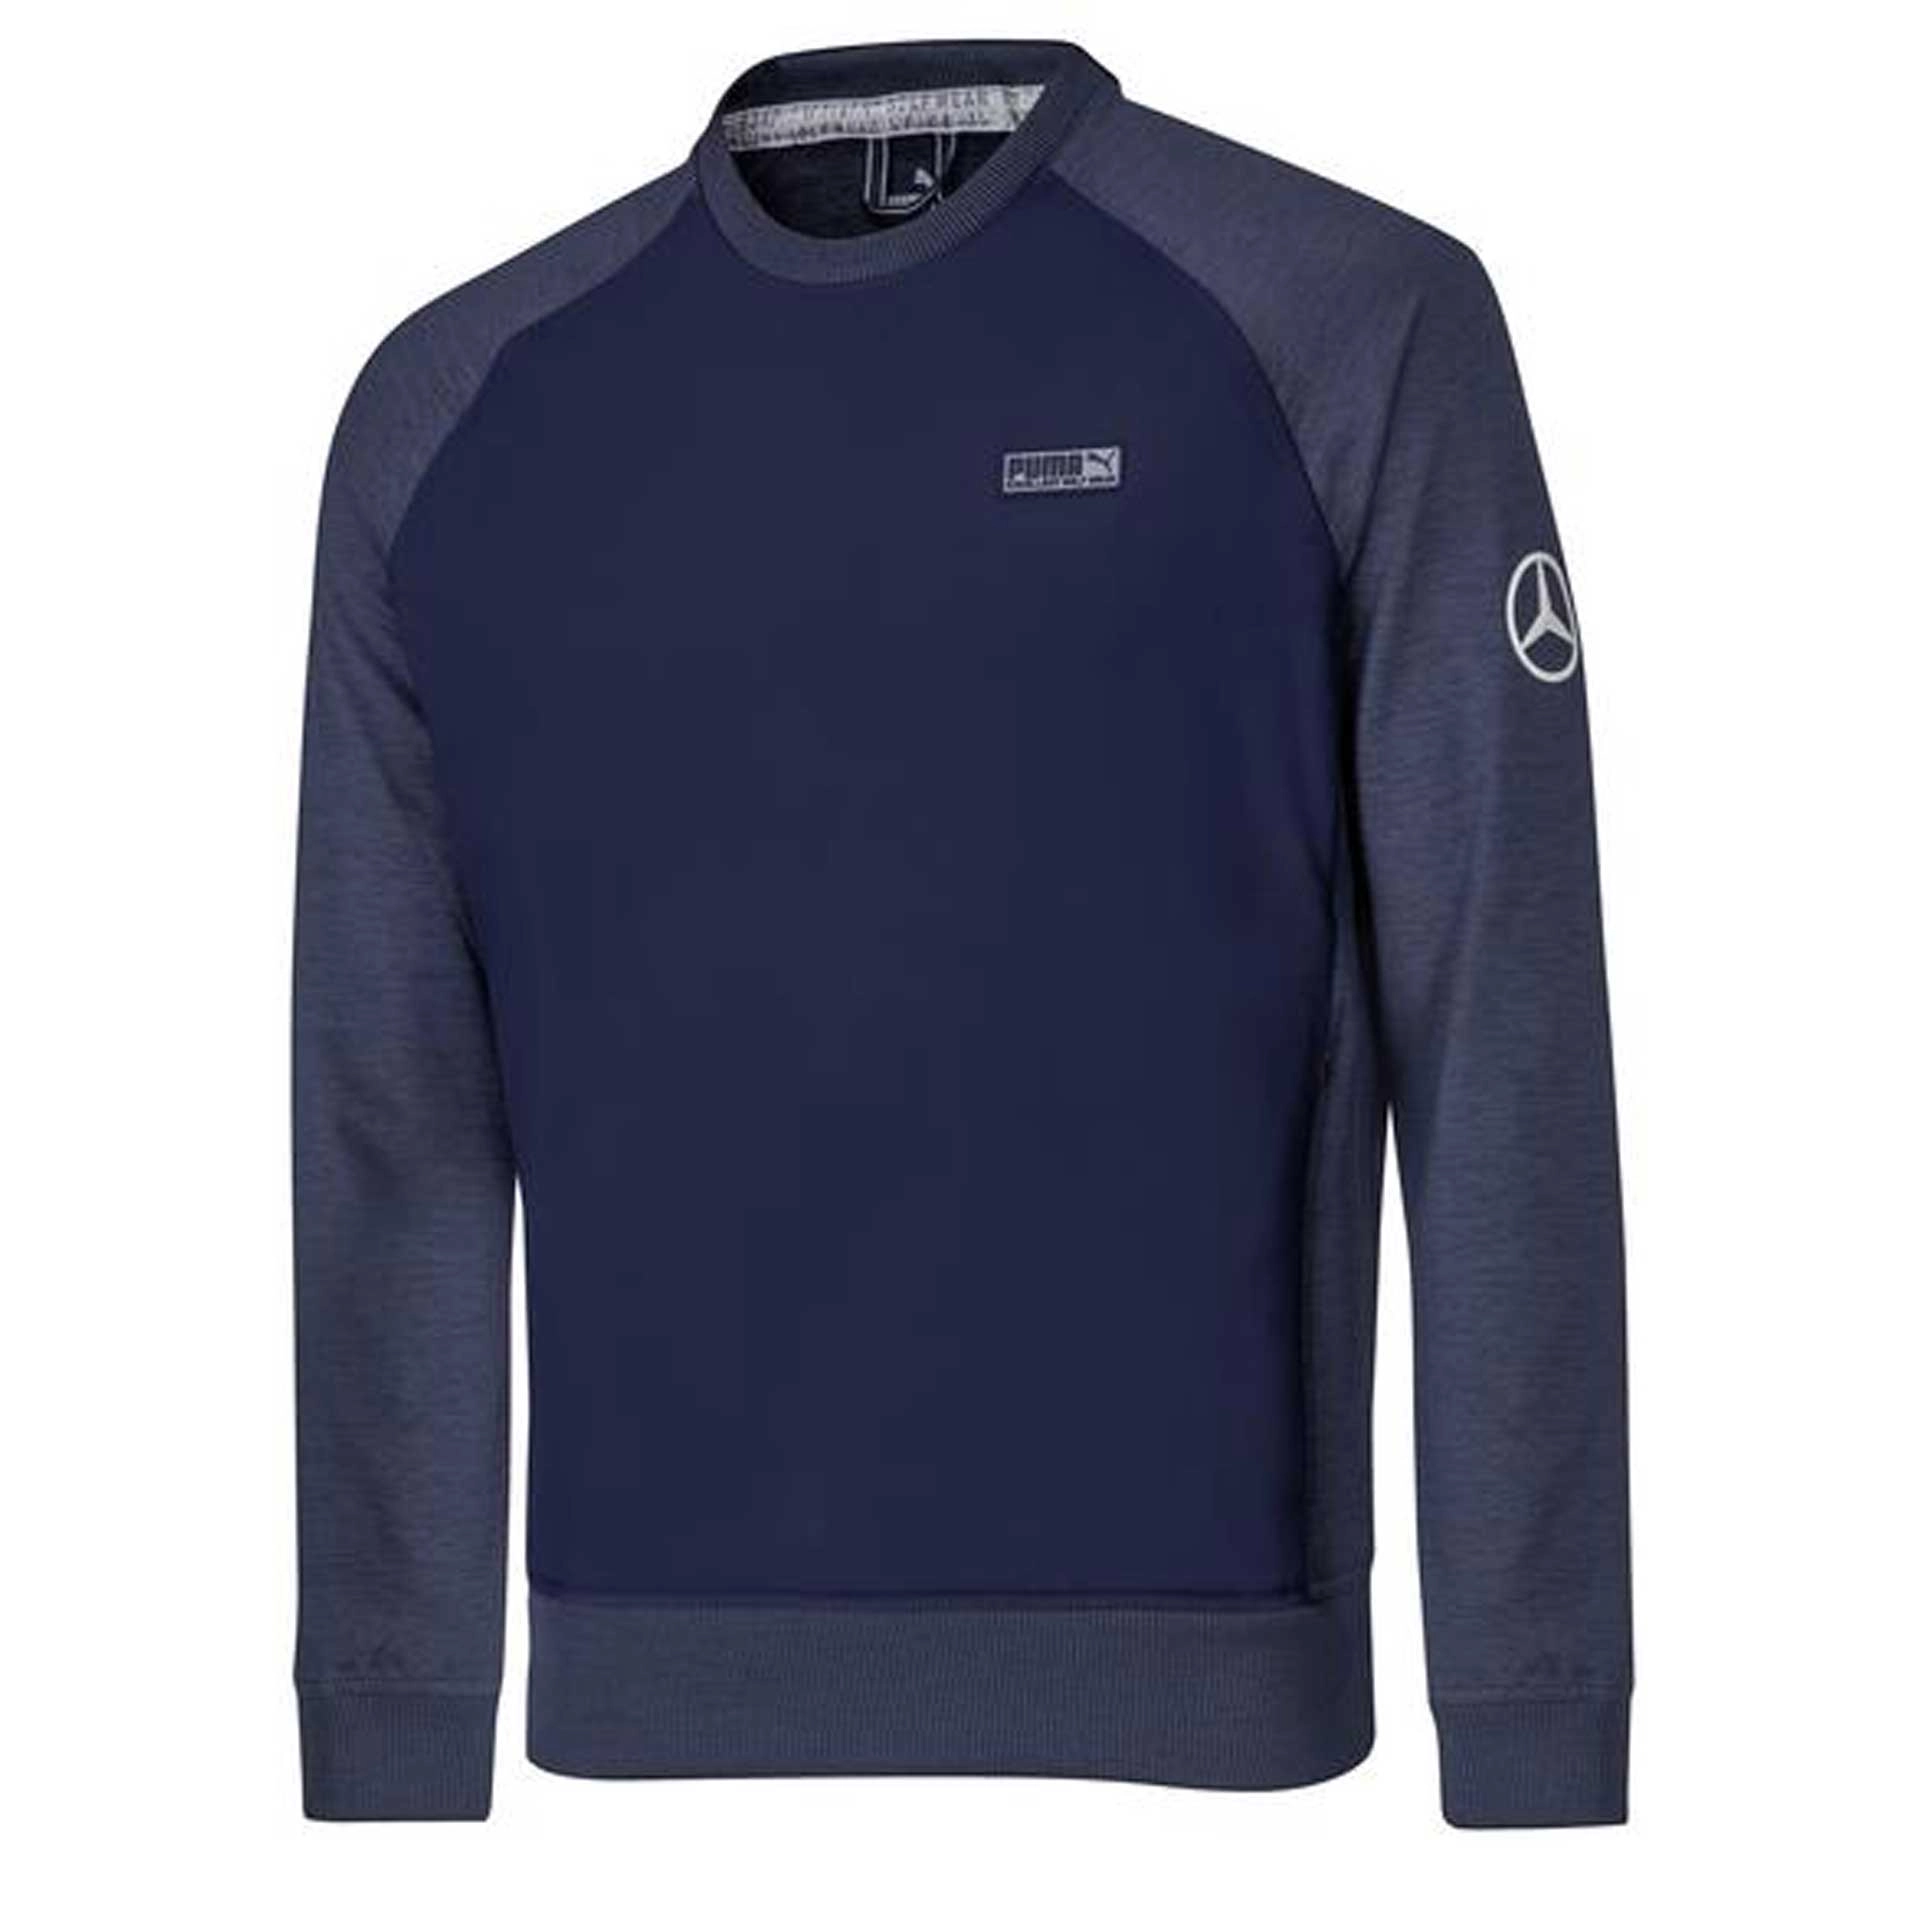 B66450600 mercedes benz golf sweater navy rosier onlineshop